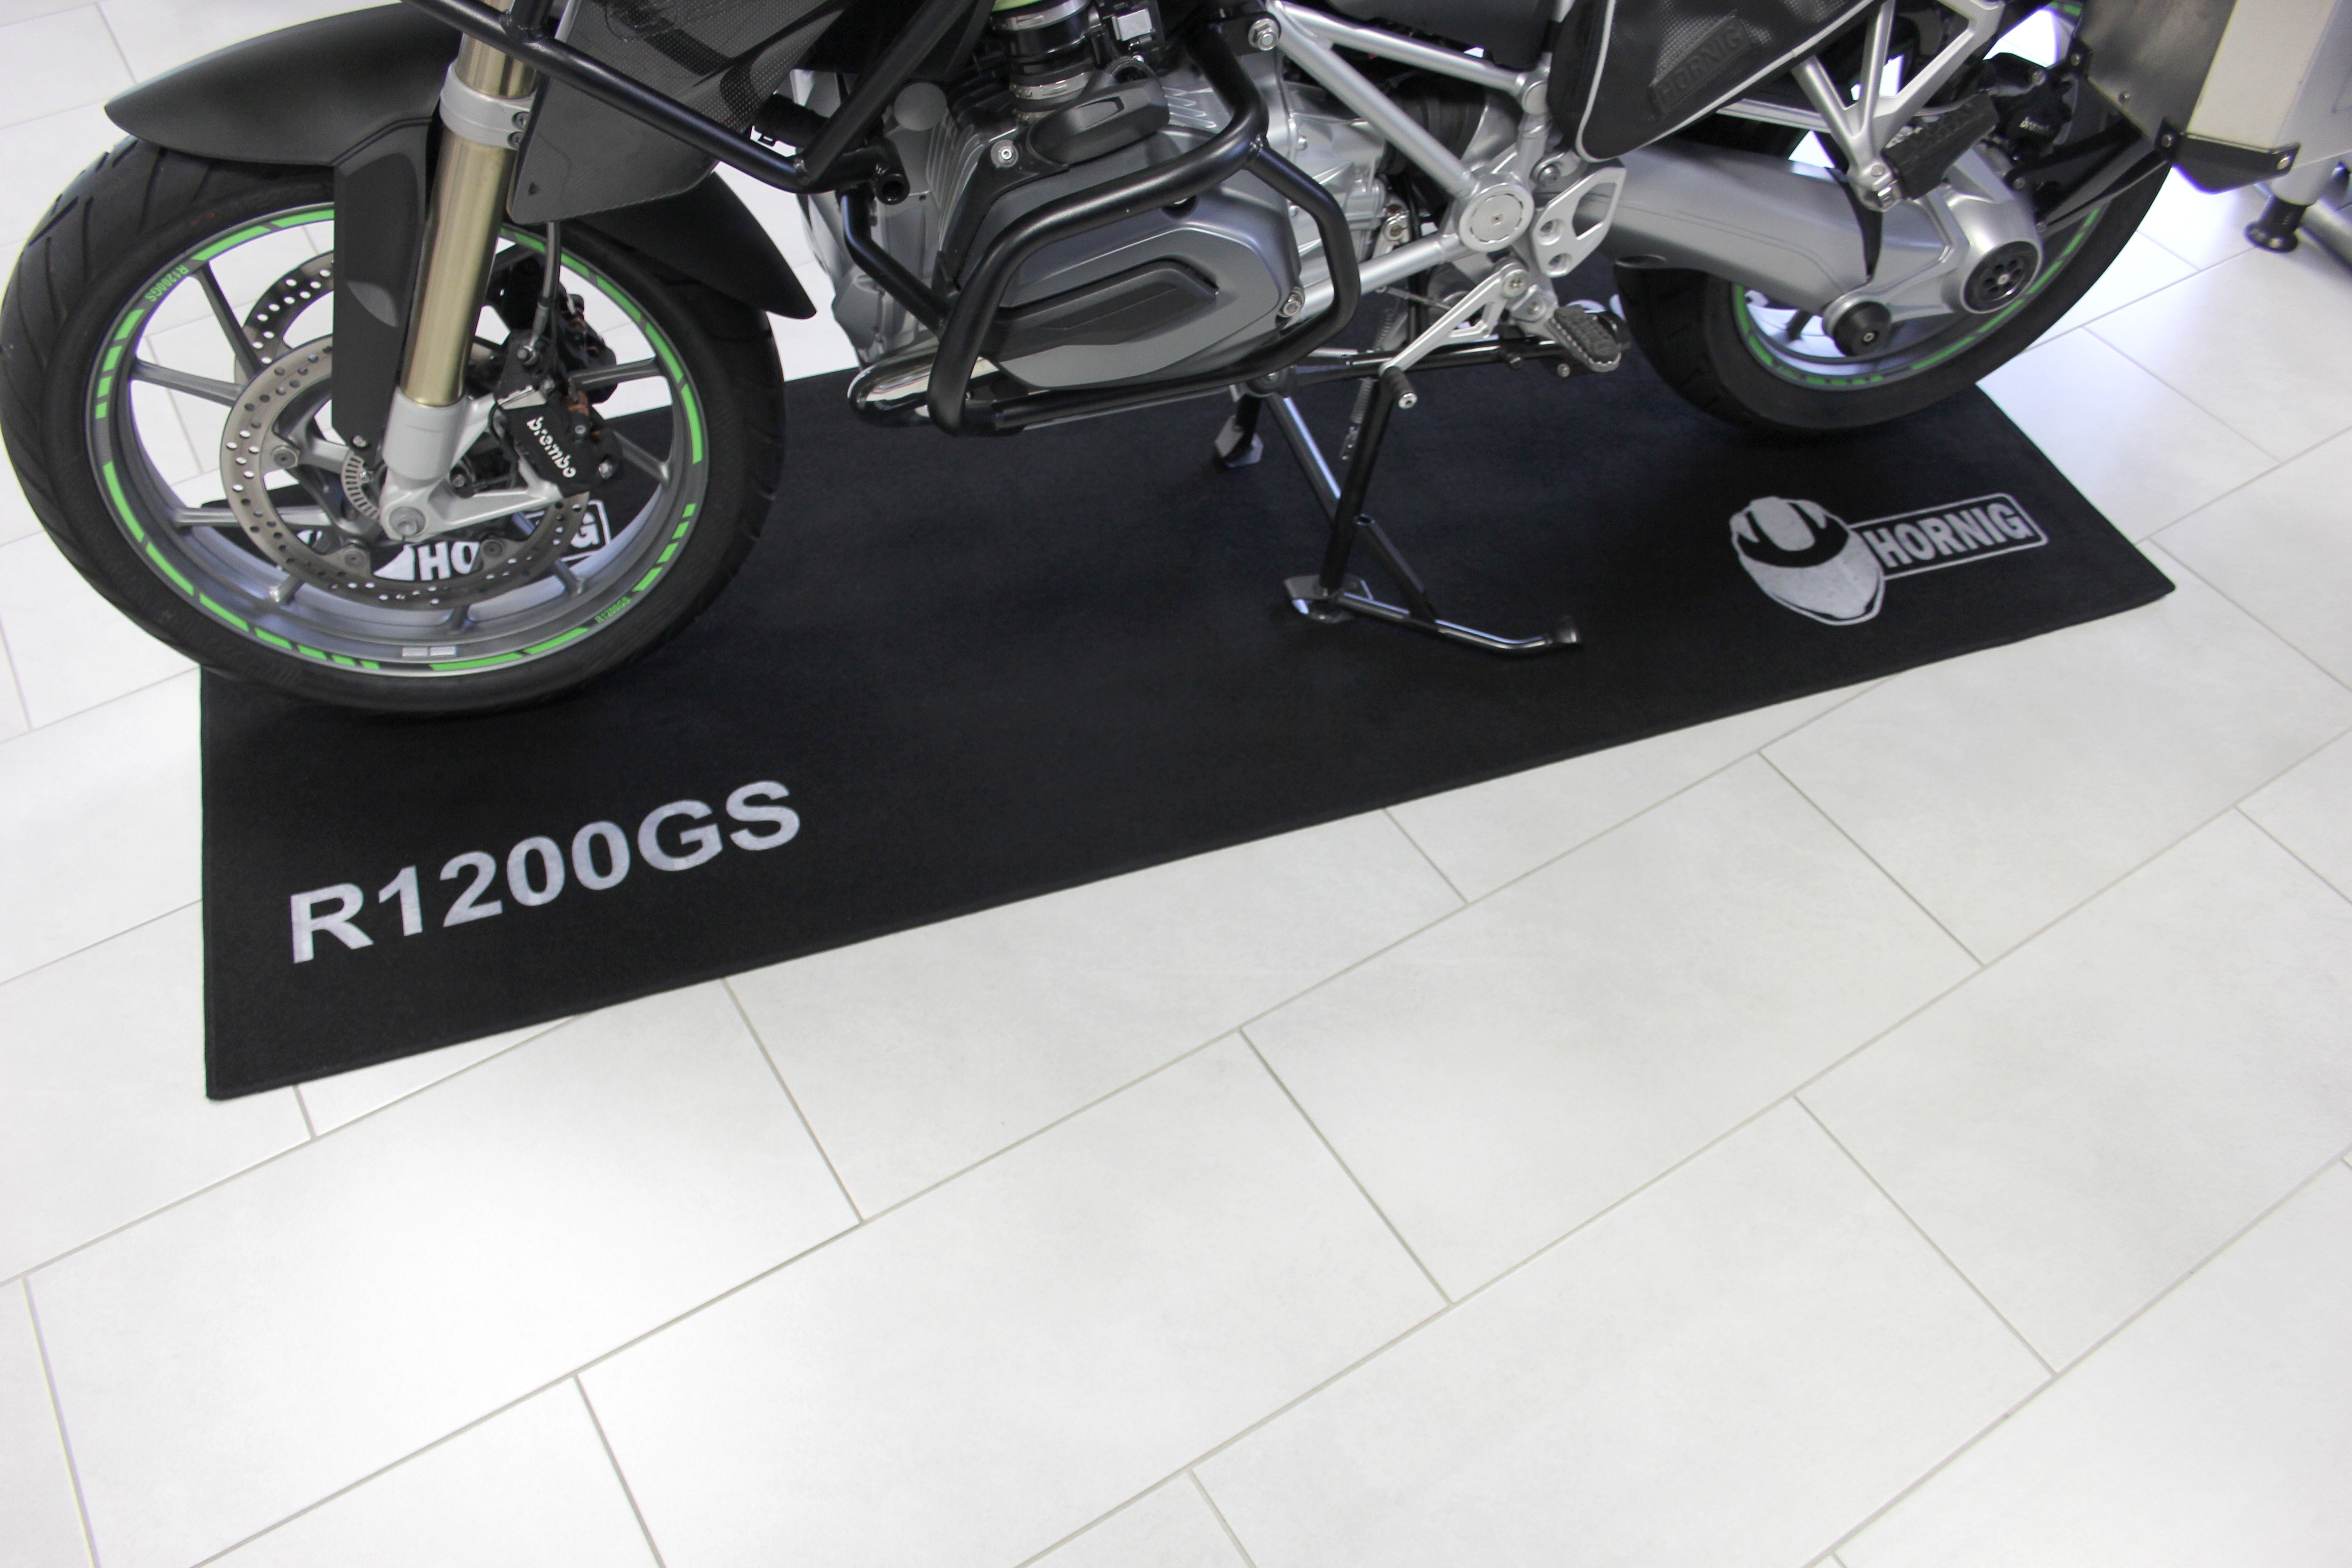 Teppiche für BMW Motorräder sehr praktisch und sieht gut aus, Motorradzubehör Hornig